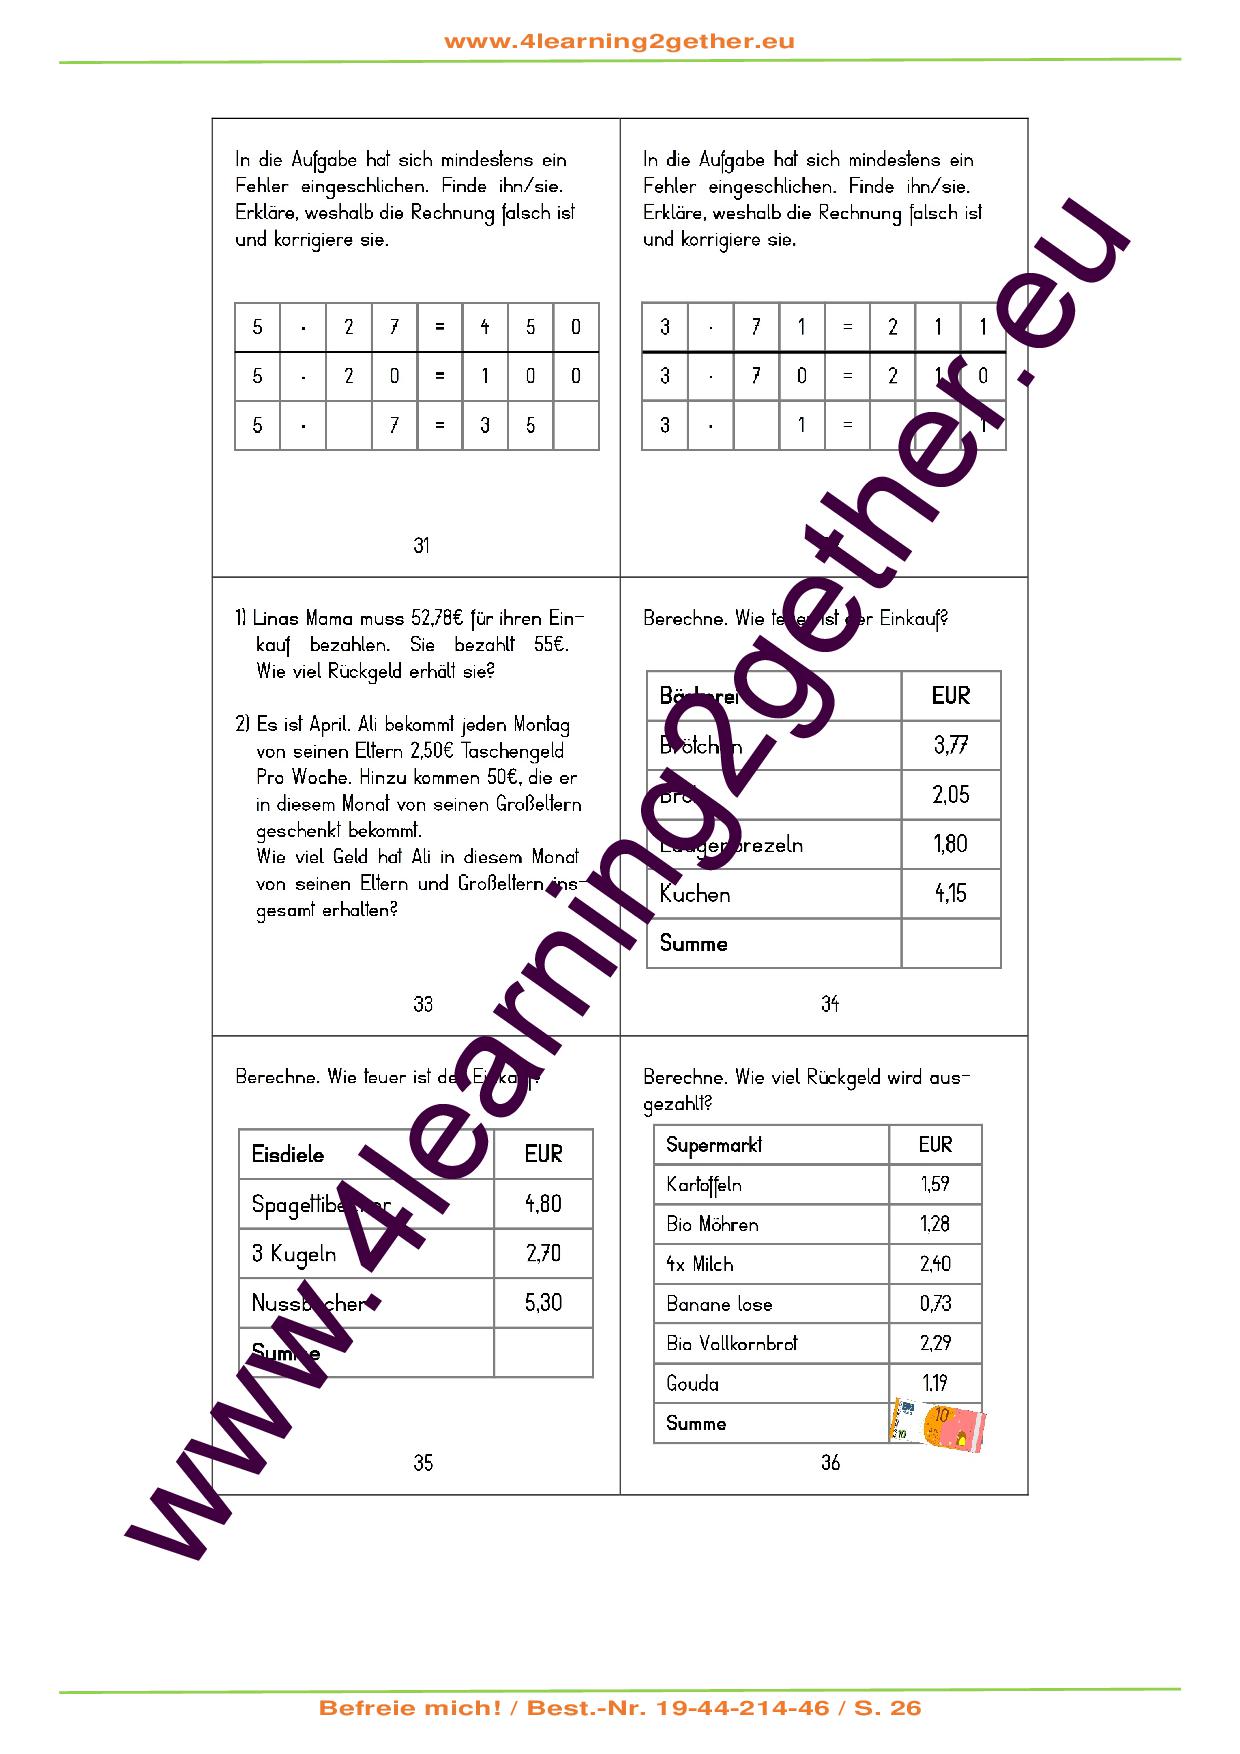 Befreie mich! – Mathematisches Rätselspiel Teil 1 / PDF, ab 10 J., 165 Rätselkarten 